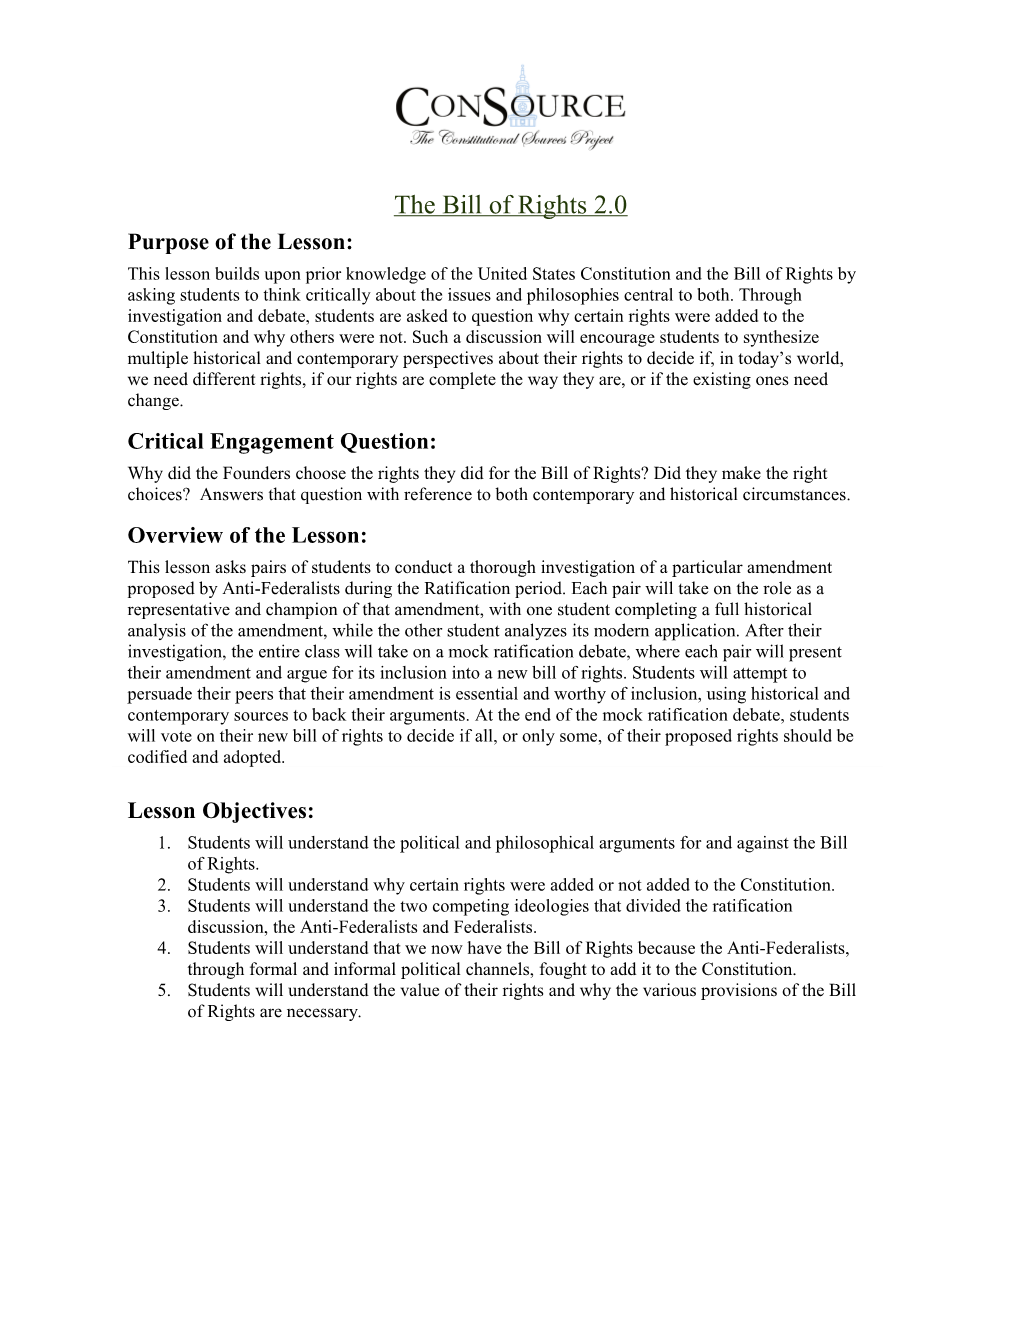 The Bill of Rights 2.0 (Grade 11-12)